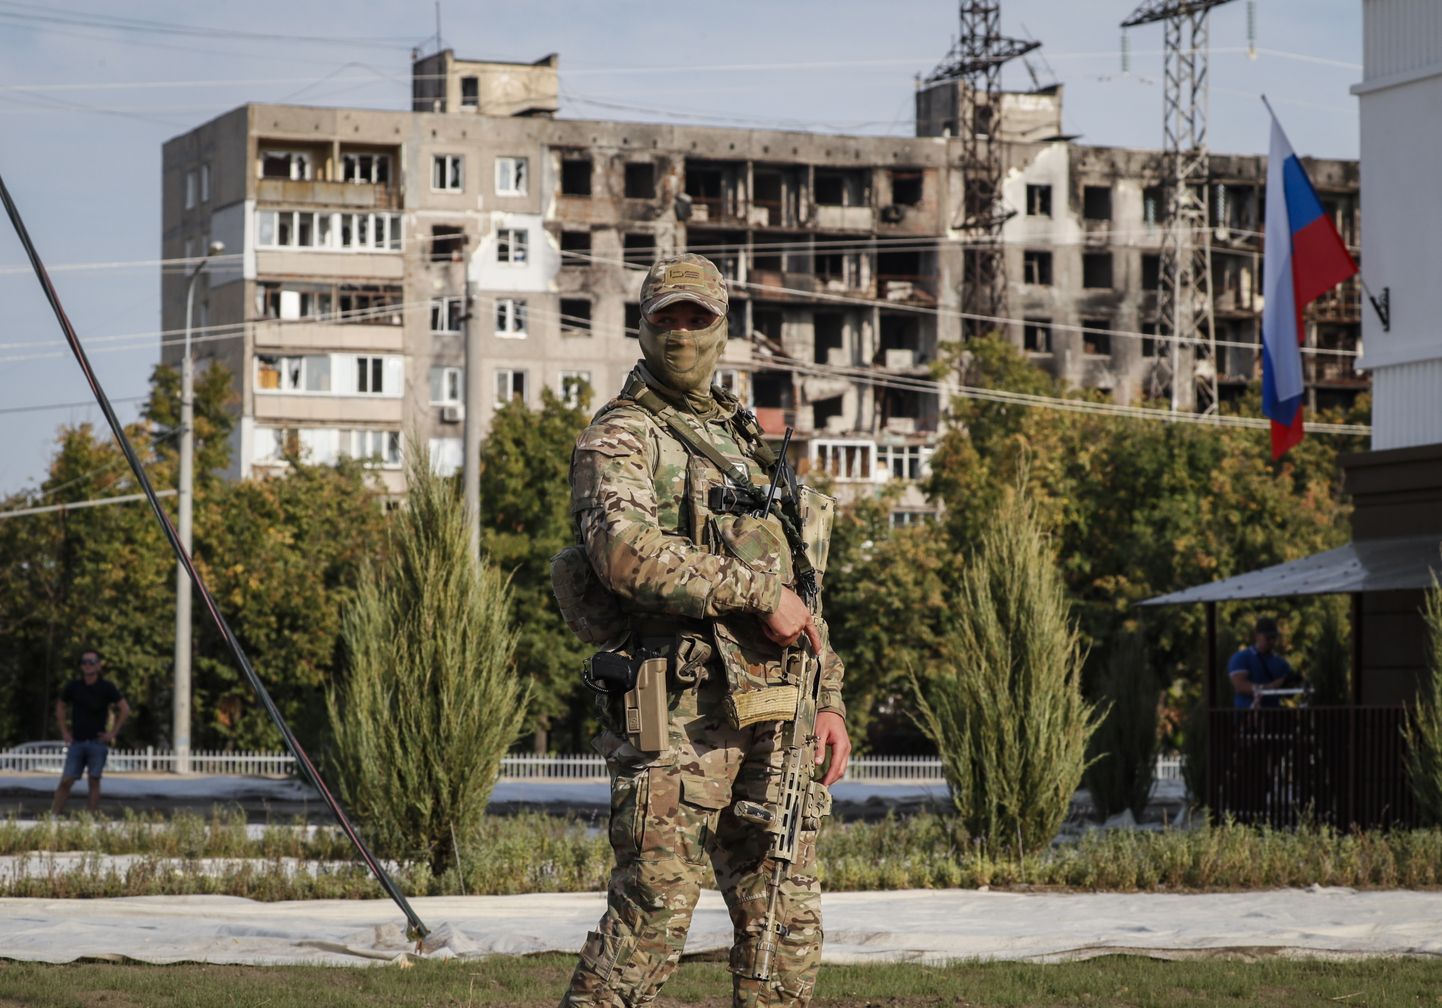 Vene sõjaväelane Ukrainas Mariupolis 30. augustil 2022.